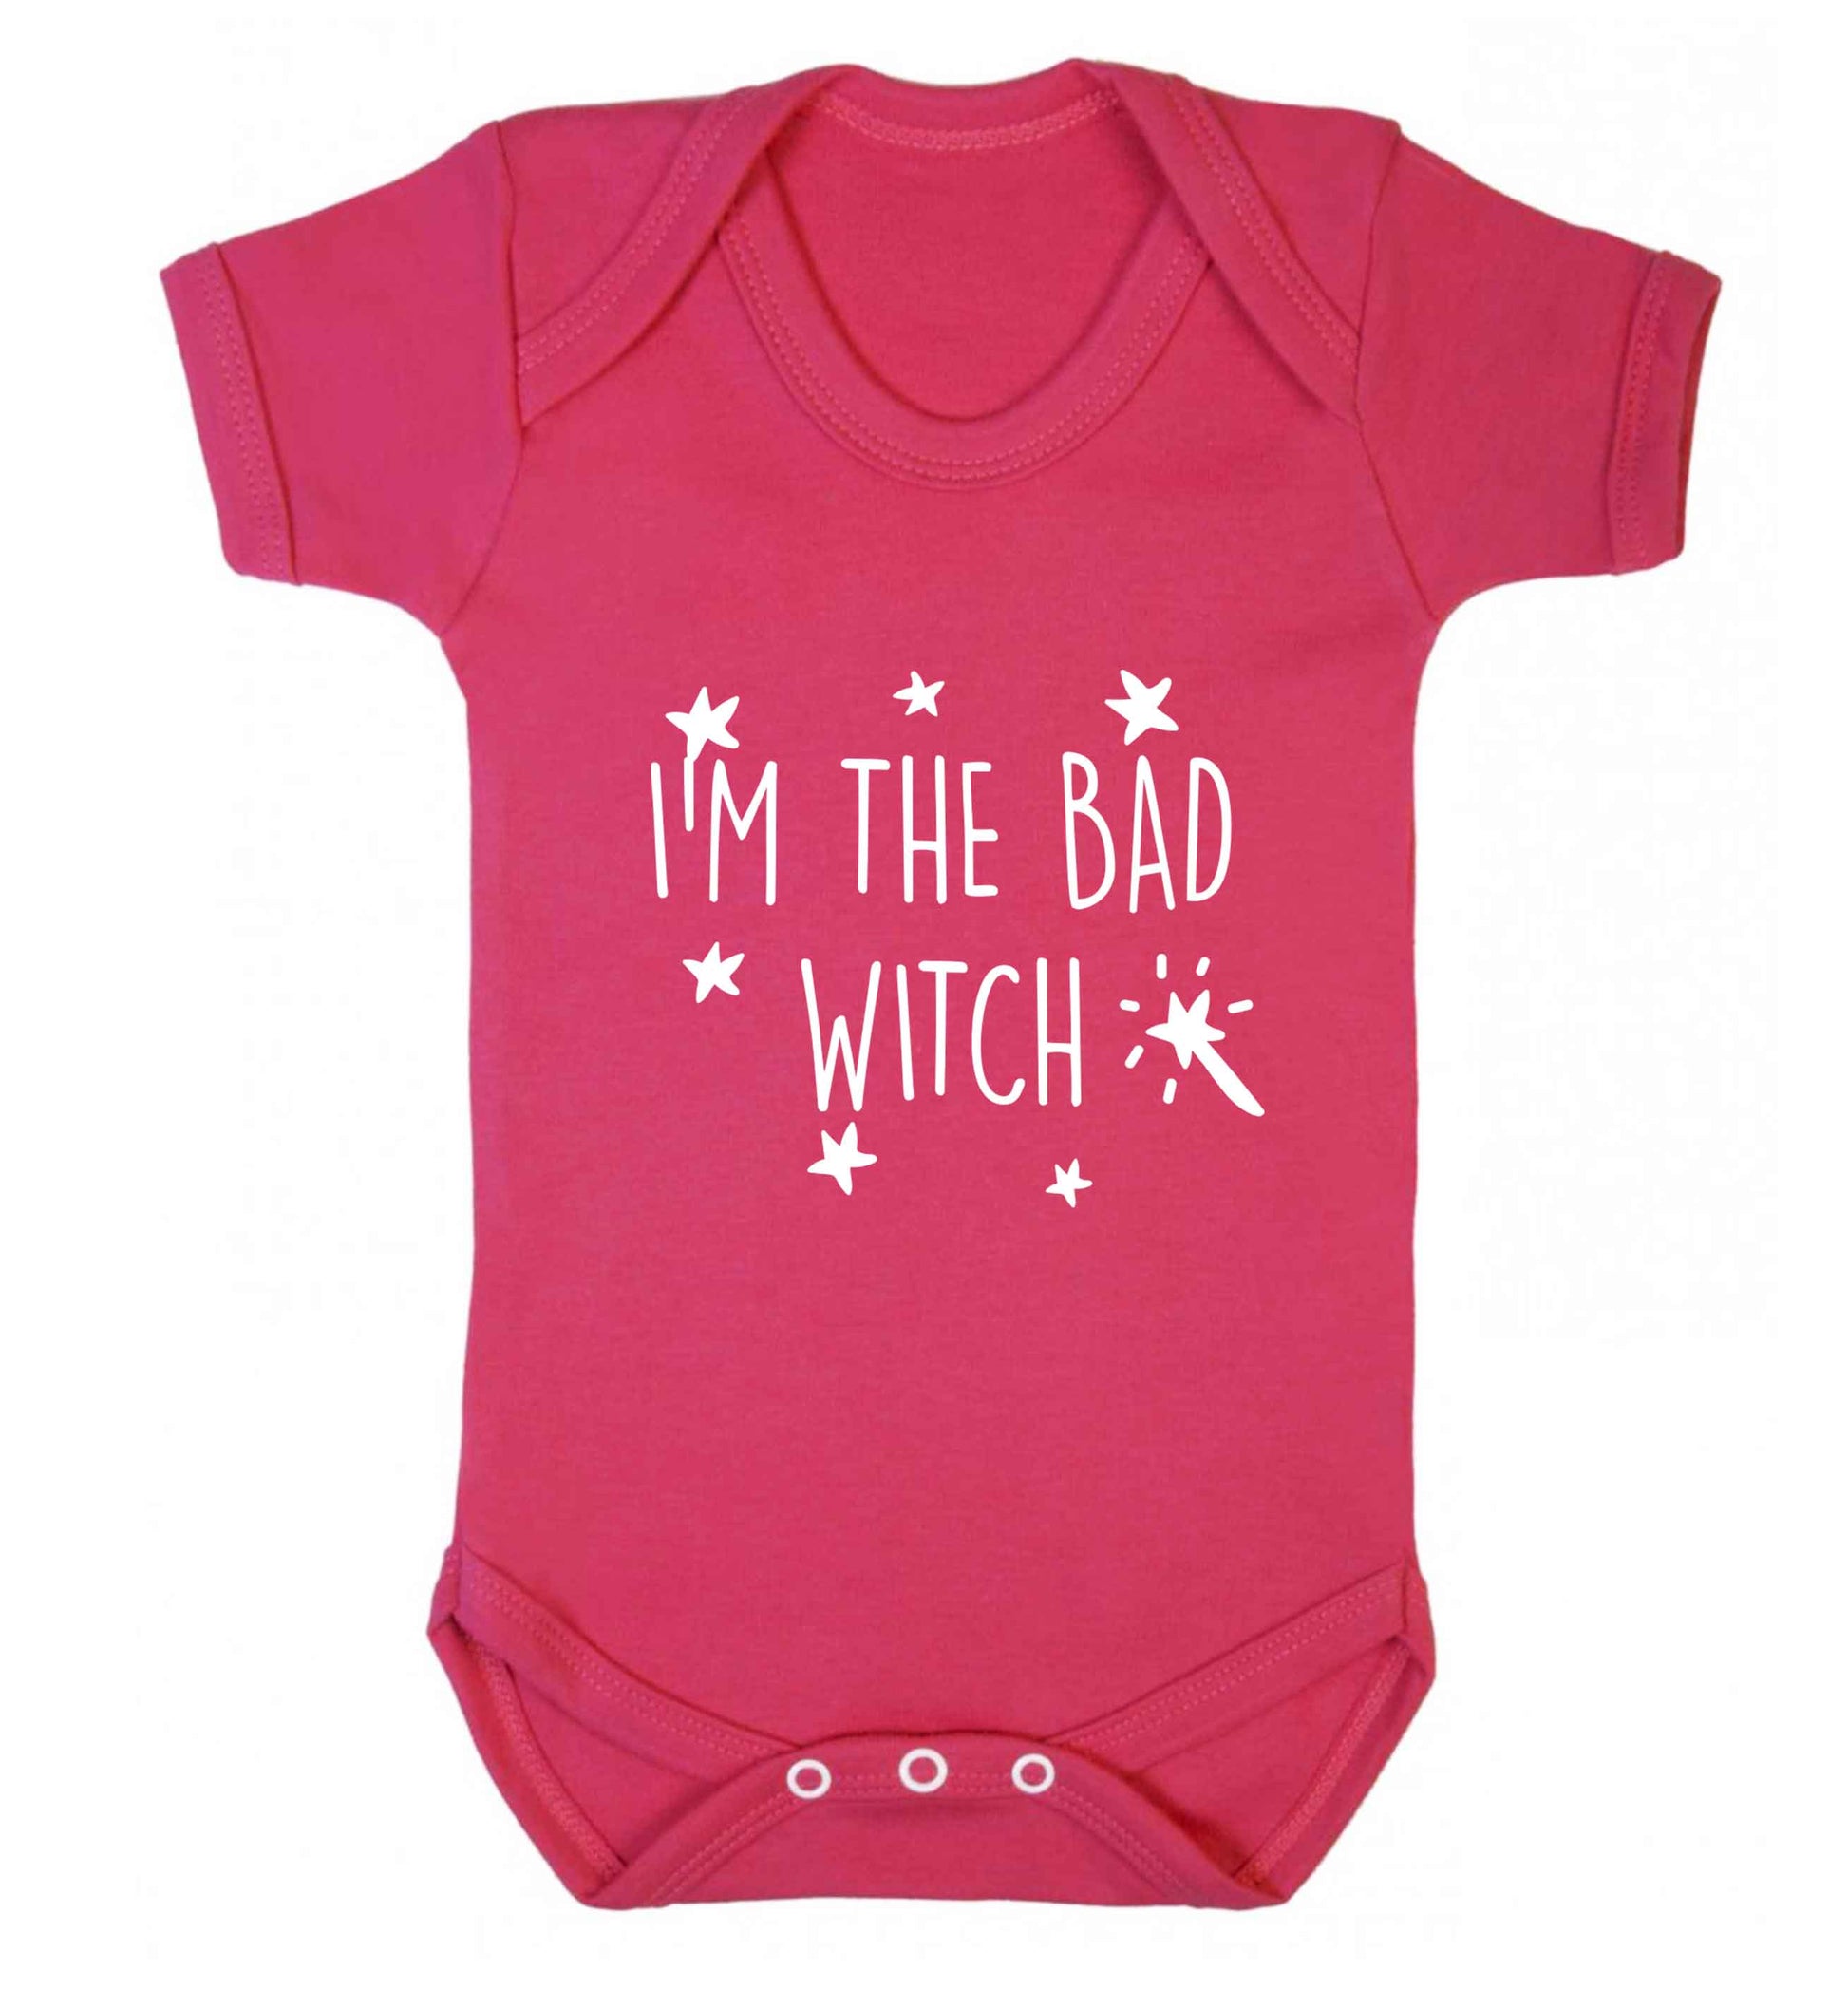 Bad witch baby vest dark pink 18-24 months